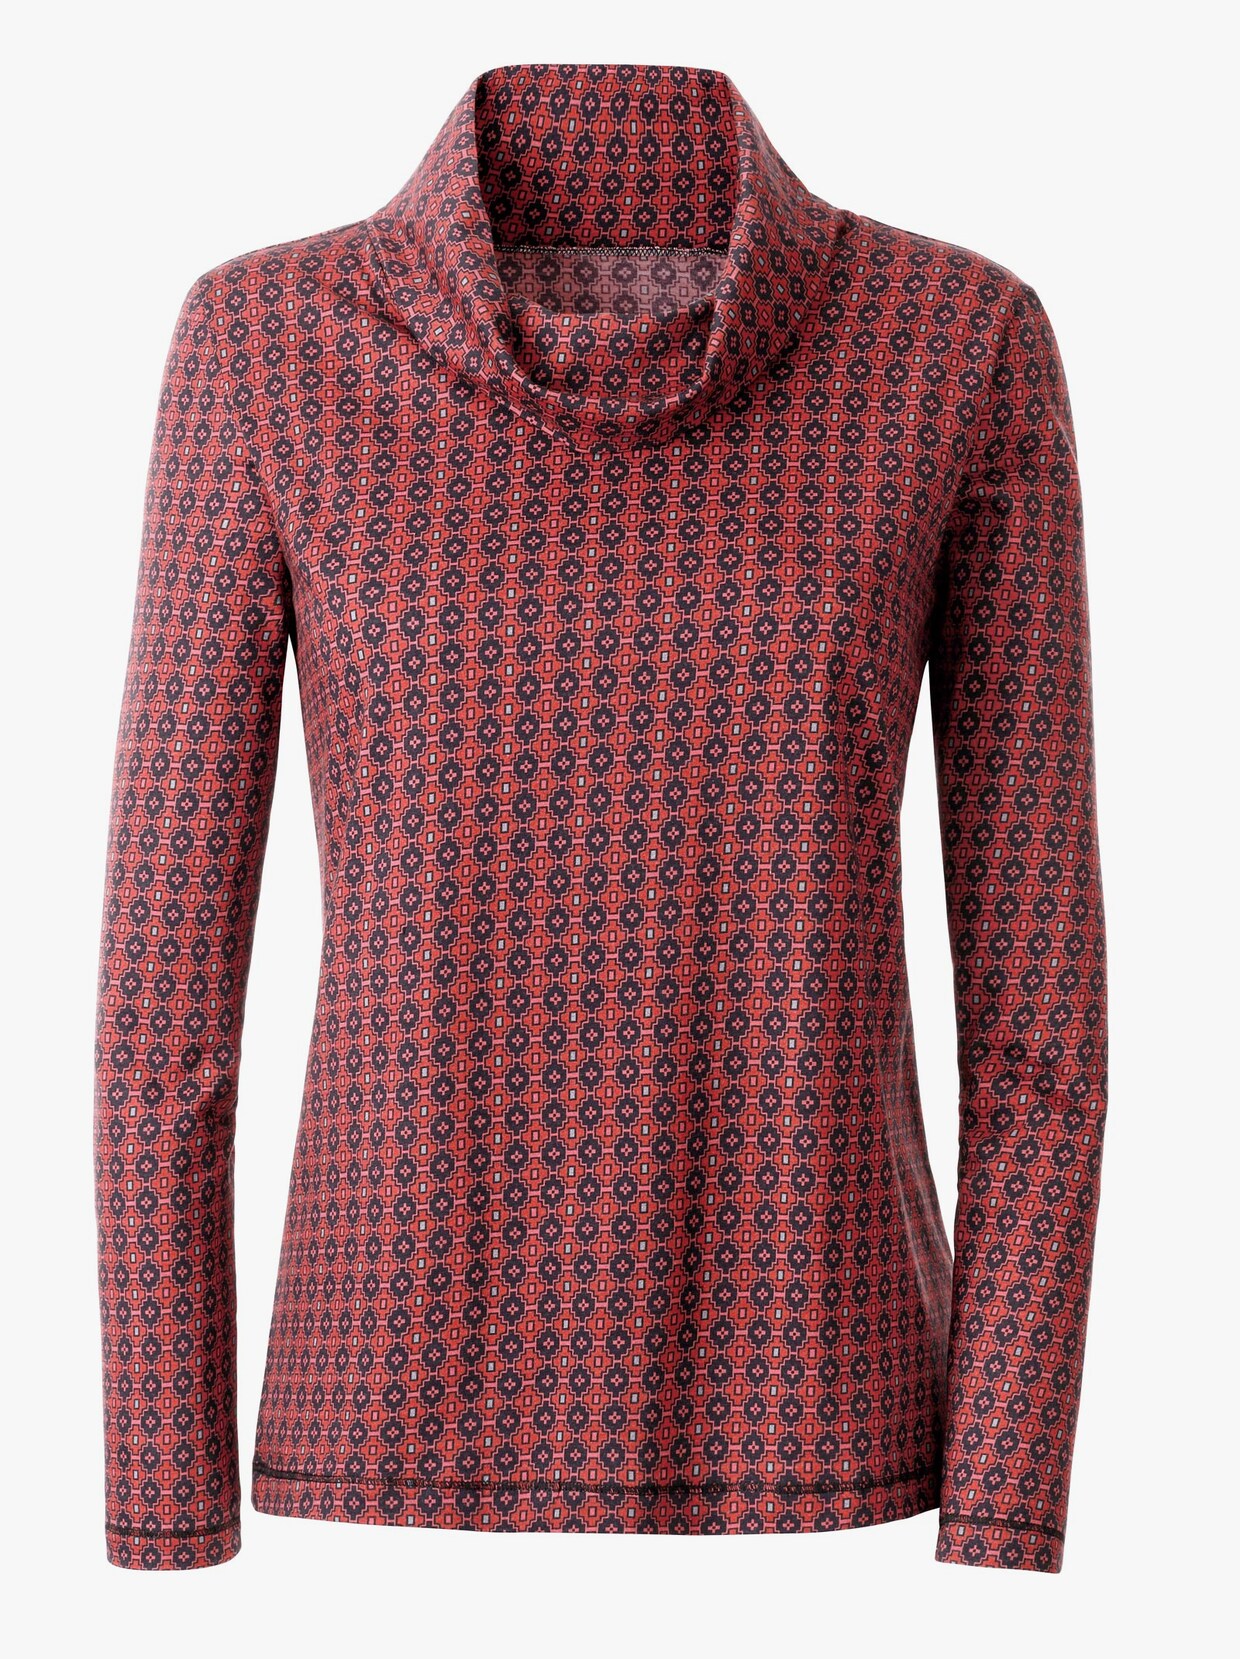 Tričko s rolákovým golierom - Červeno-čierne vzorované